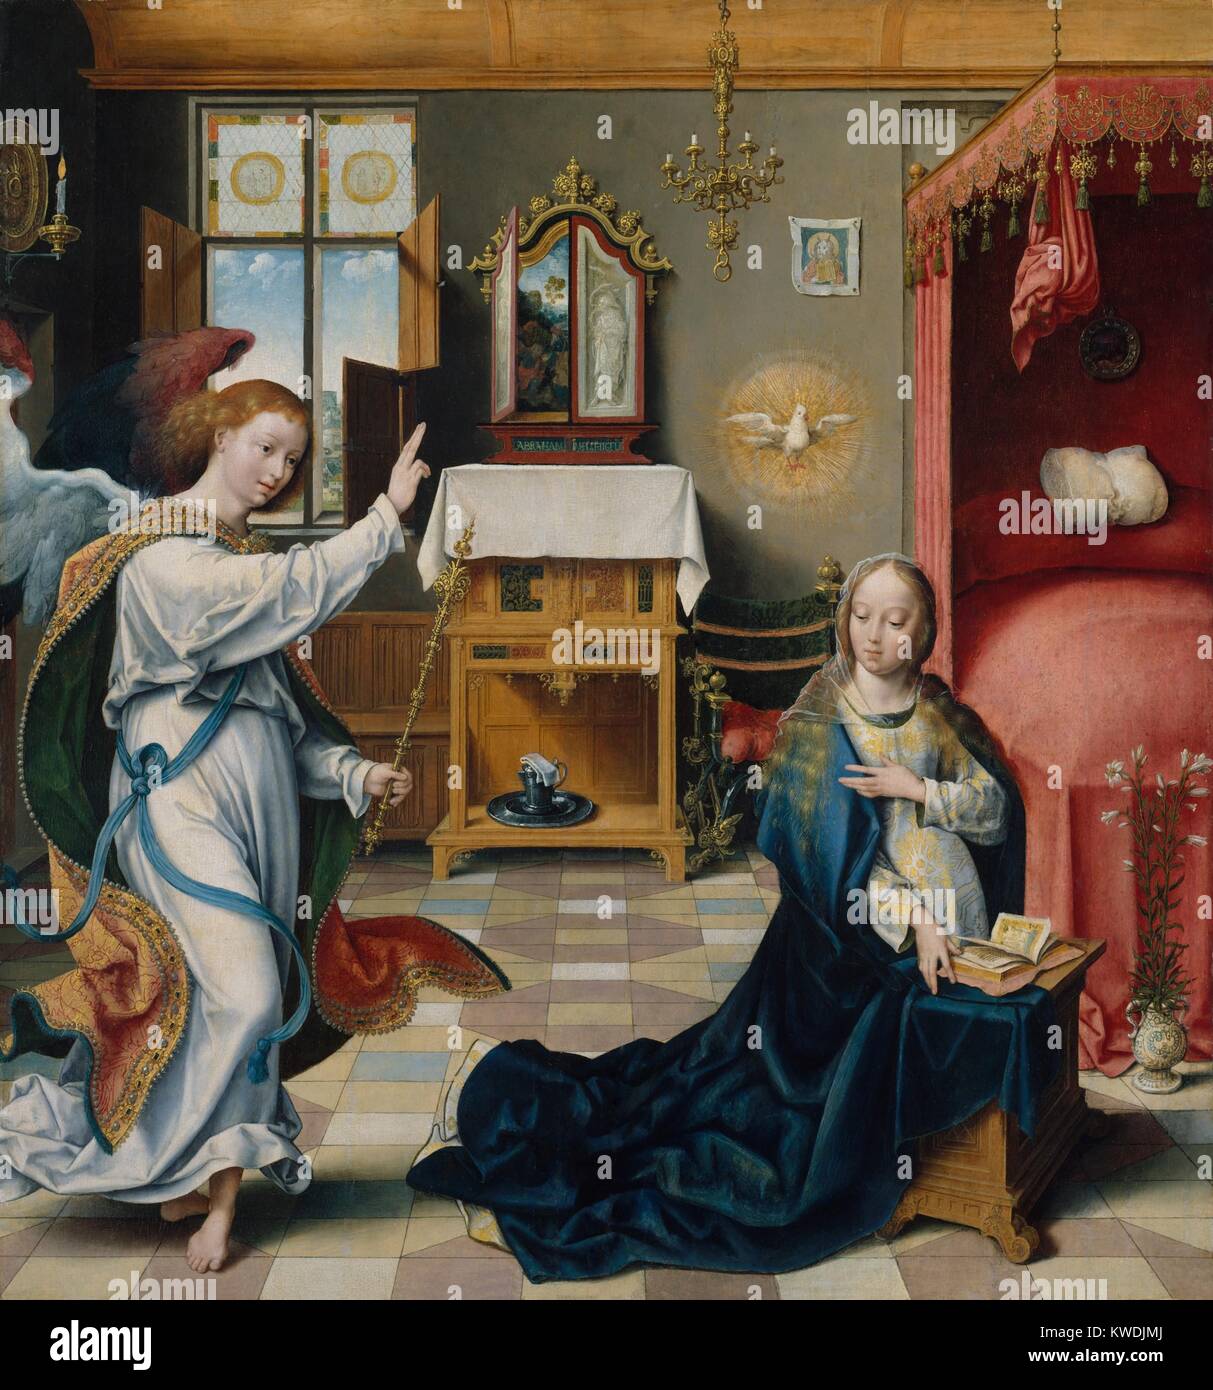 L'Annunciazione, di Joos van Cleve, 1525, Netherlandish, Northern Renaissance pittura ad olio. L angelo Gabriele e la Vergine Maria entro un riccamente arredate interni. Le figure sono dipinte con graziosa animazione e grande dettaglio (BSLOC 2017 16 92) Foto Stock